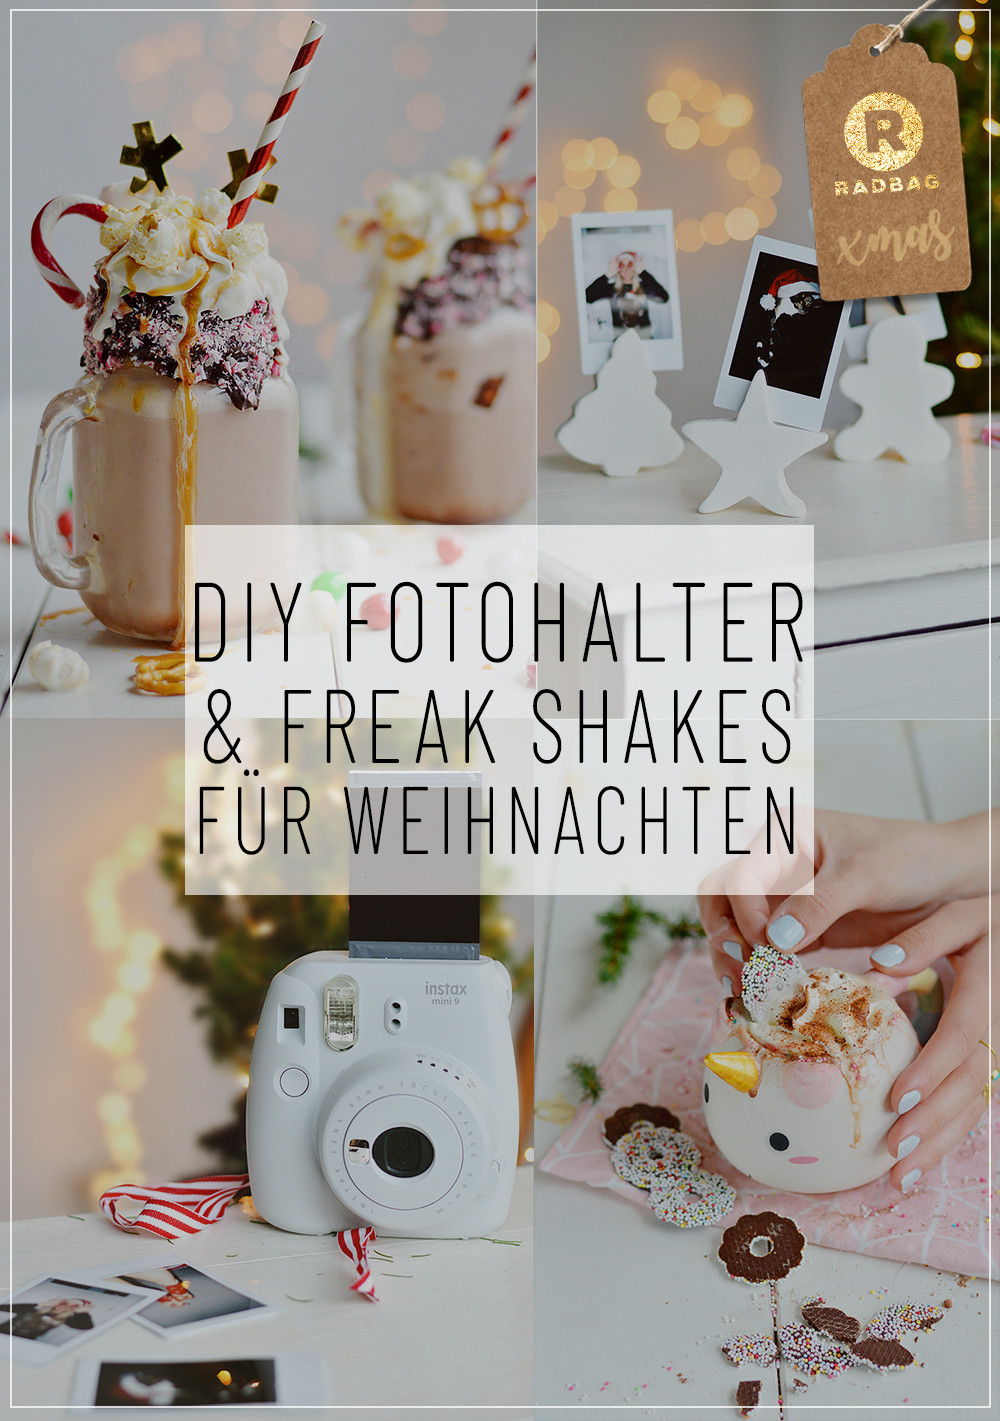 Weihnachtsgeschenke Diy
 DIY Weihnachtsgeschenke Freak Shakes und Fotohalter